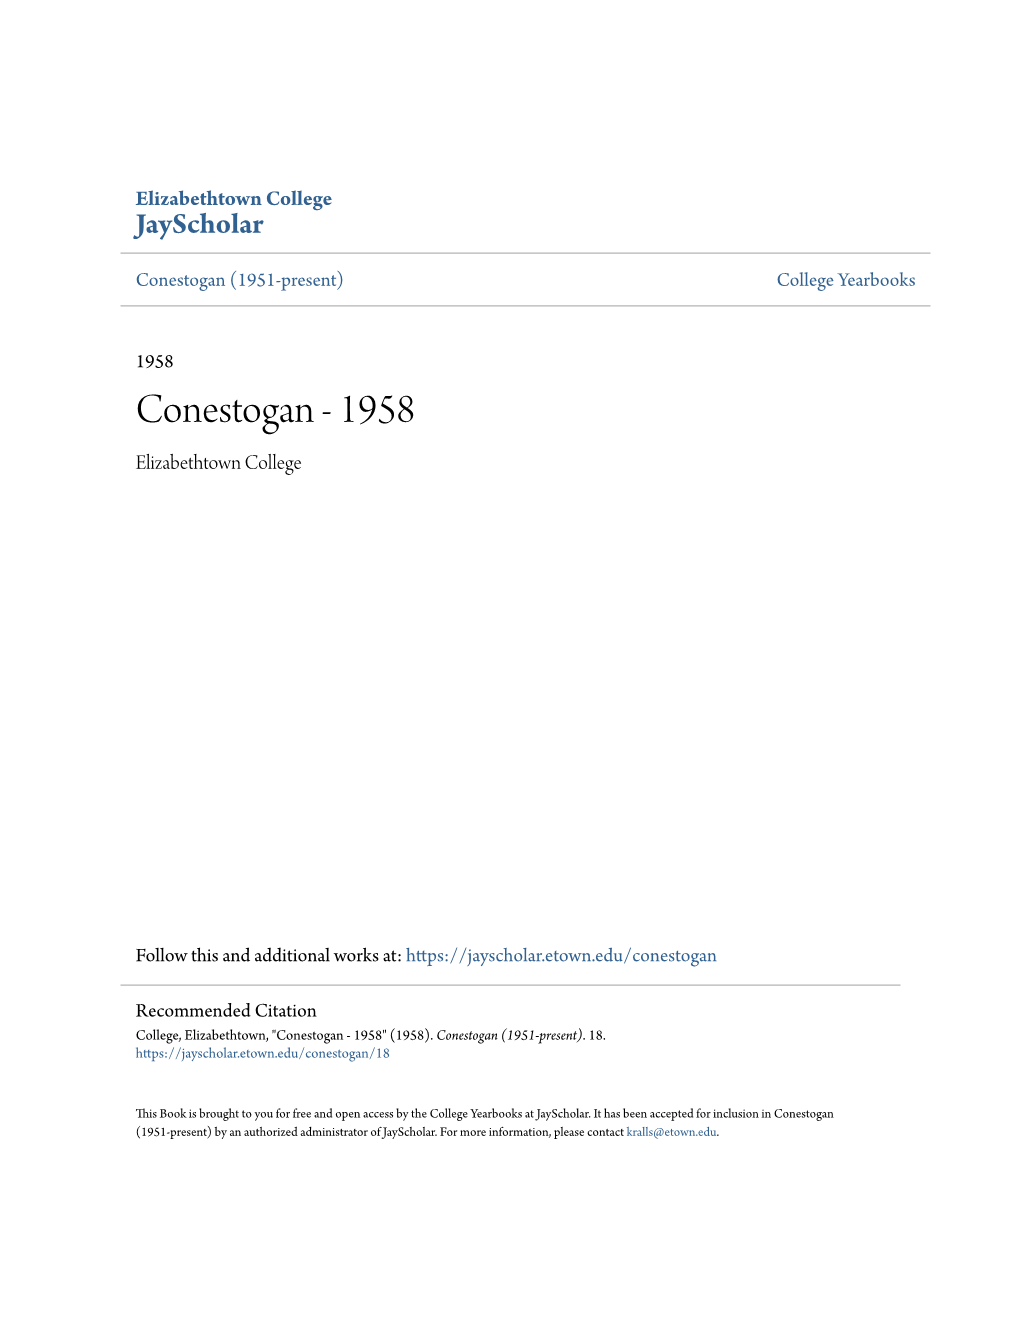 Conestogan (1951-Present) College Yearbooks